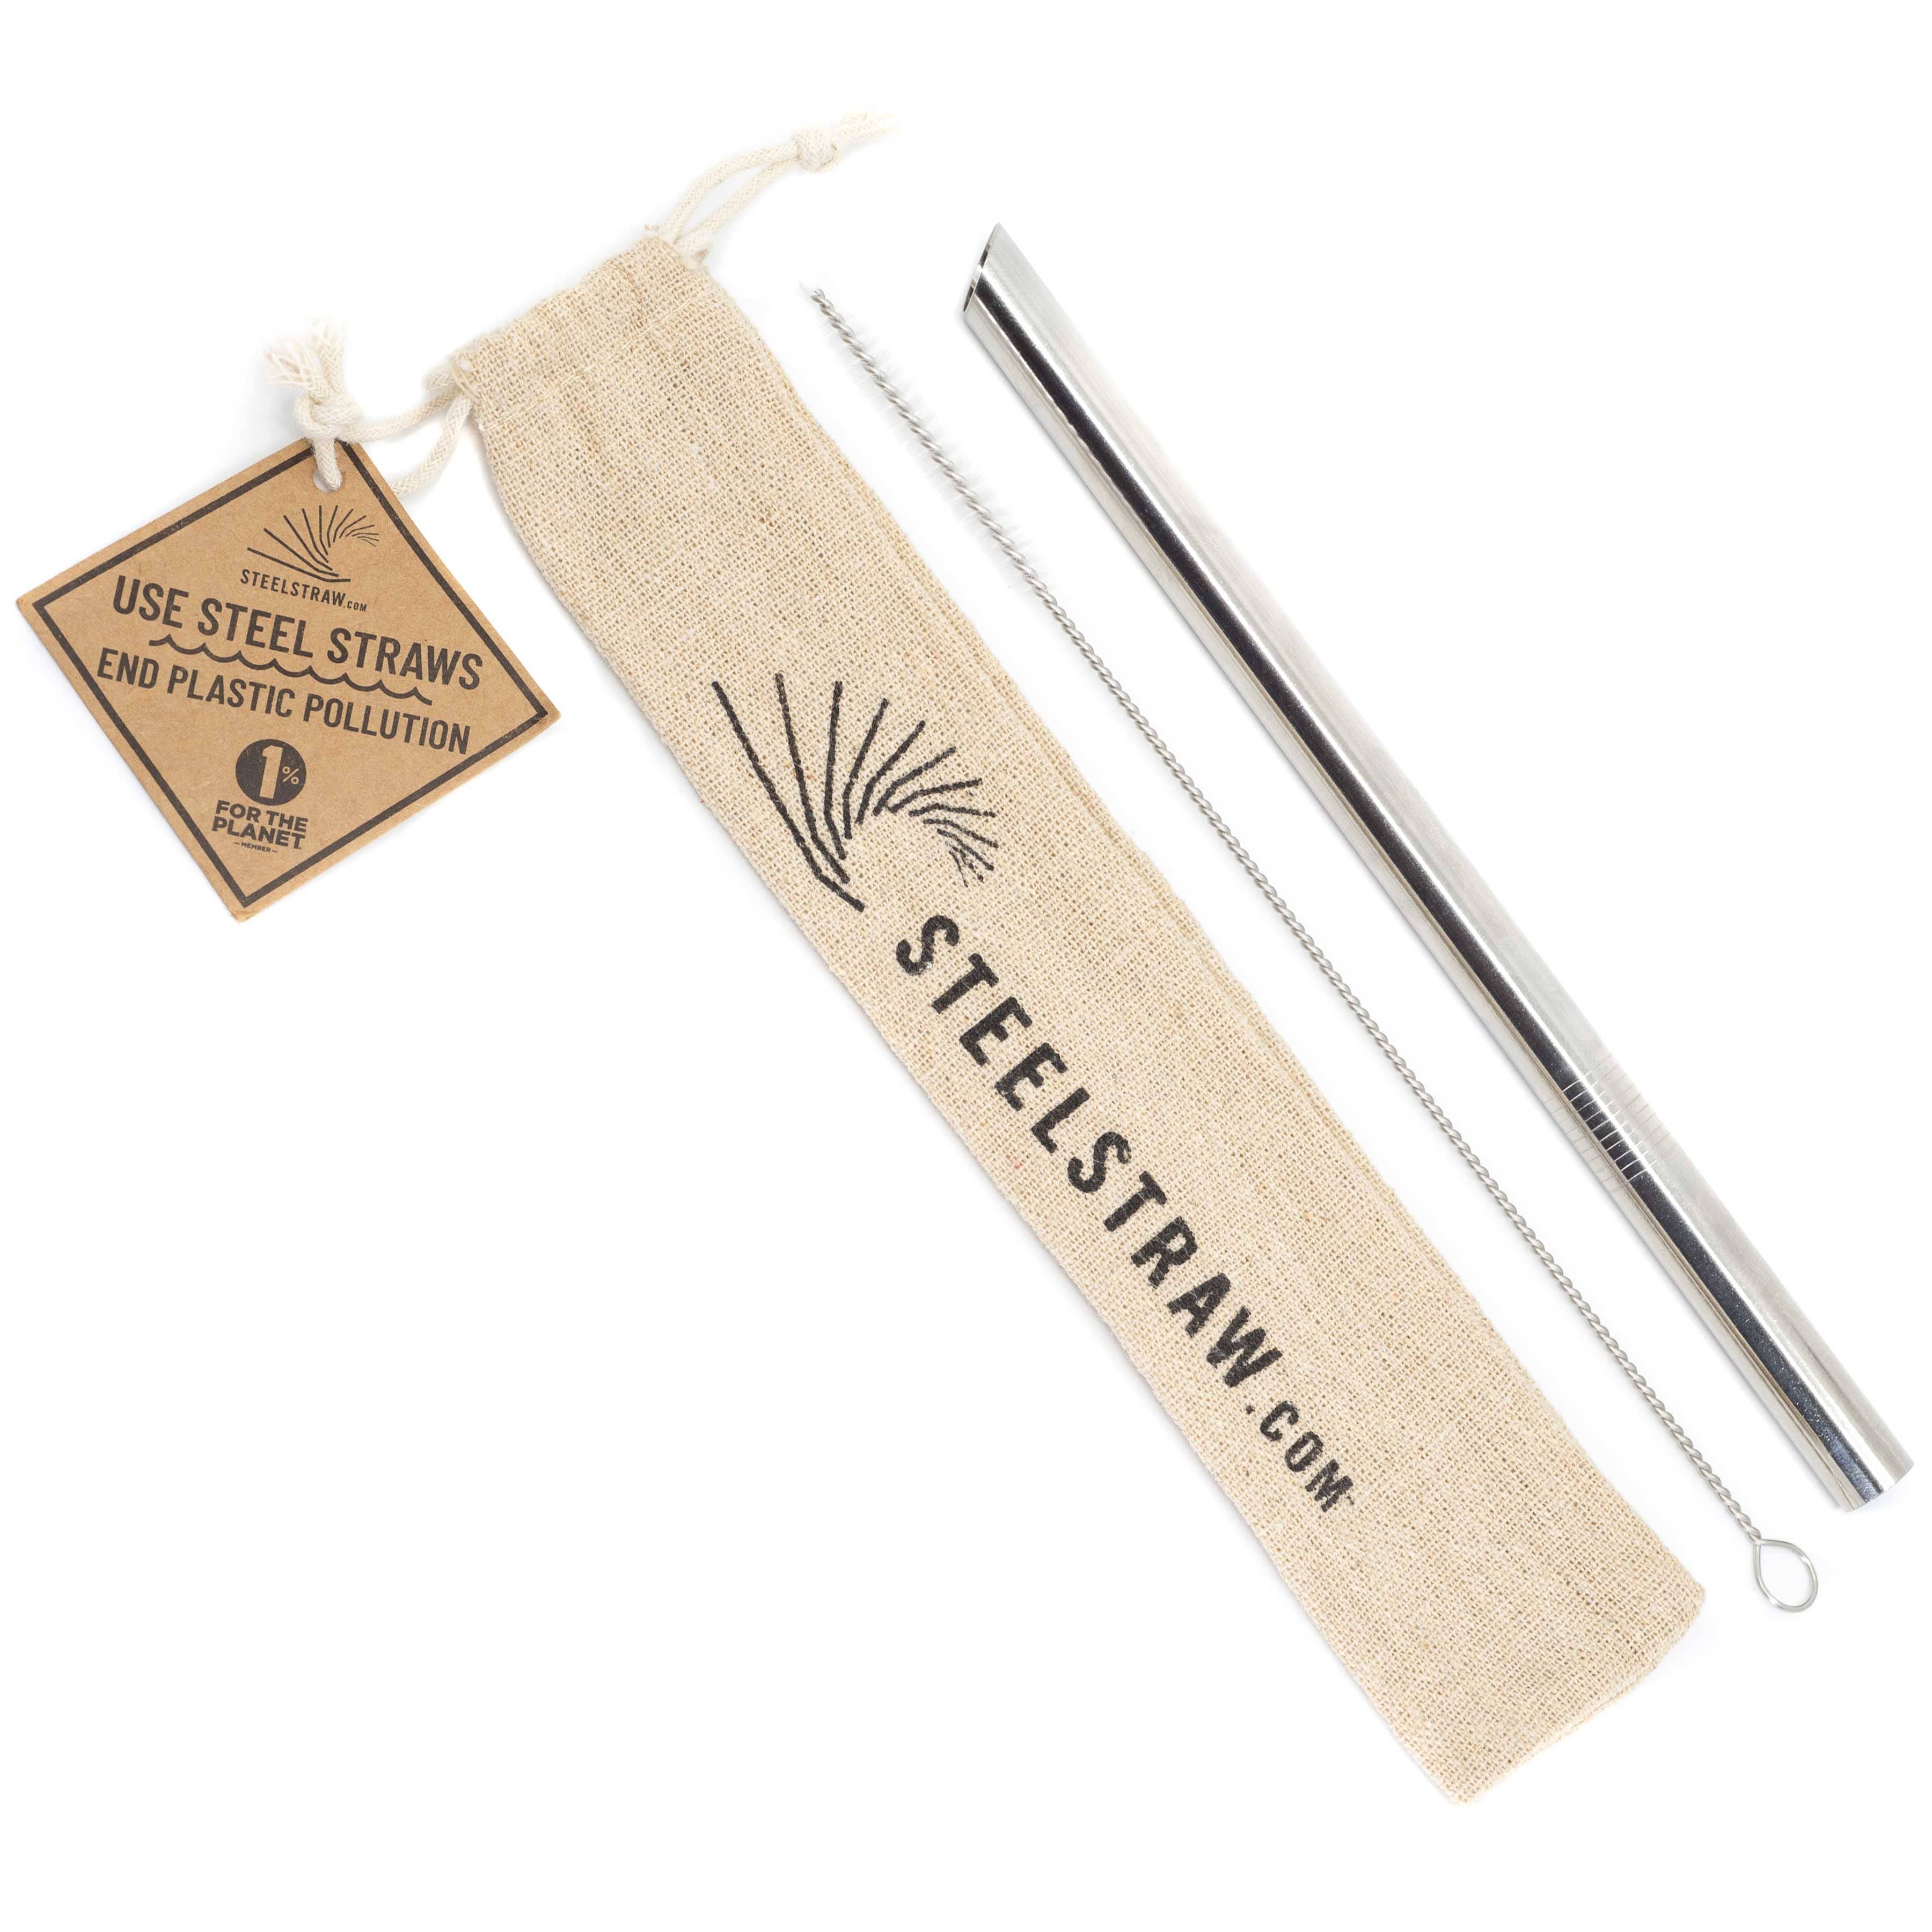 Commons Single Reusable Metal Straw Set